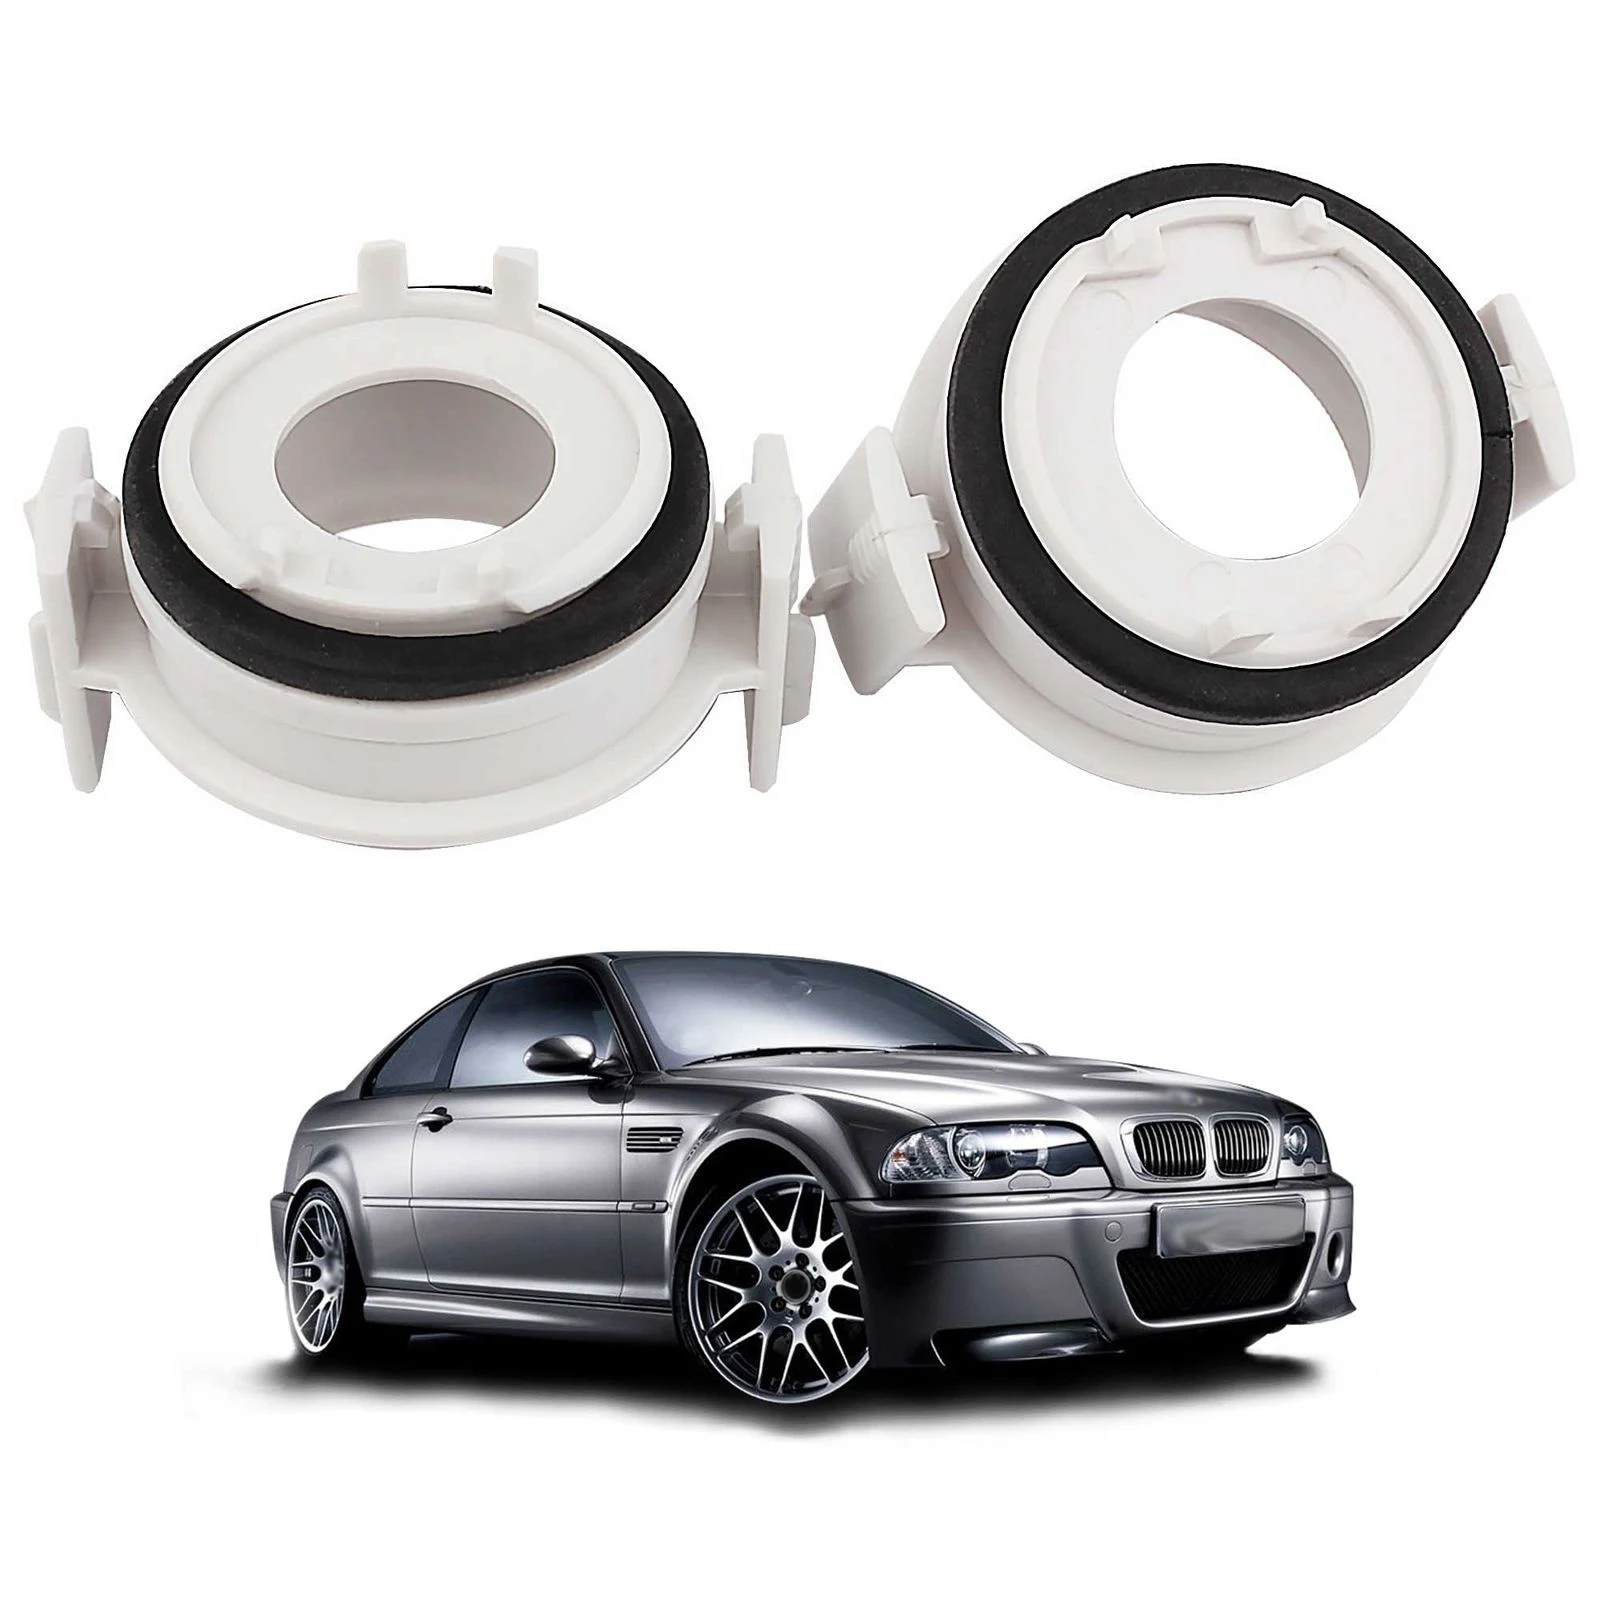 Комплект из 2 предметов H7 светодиодный фар лампа держатель держателя для BMW E46 3 серия